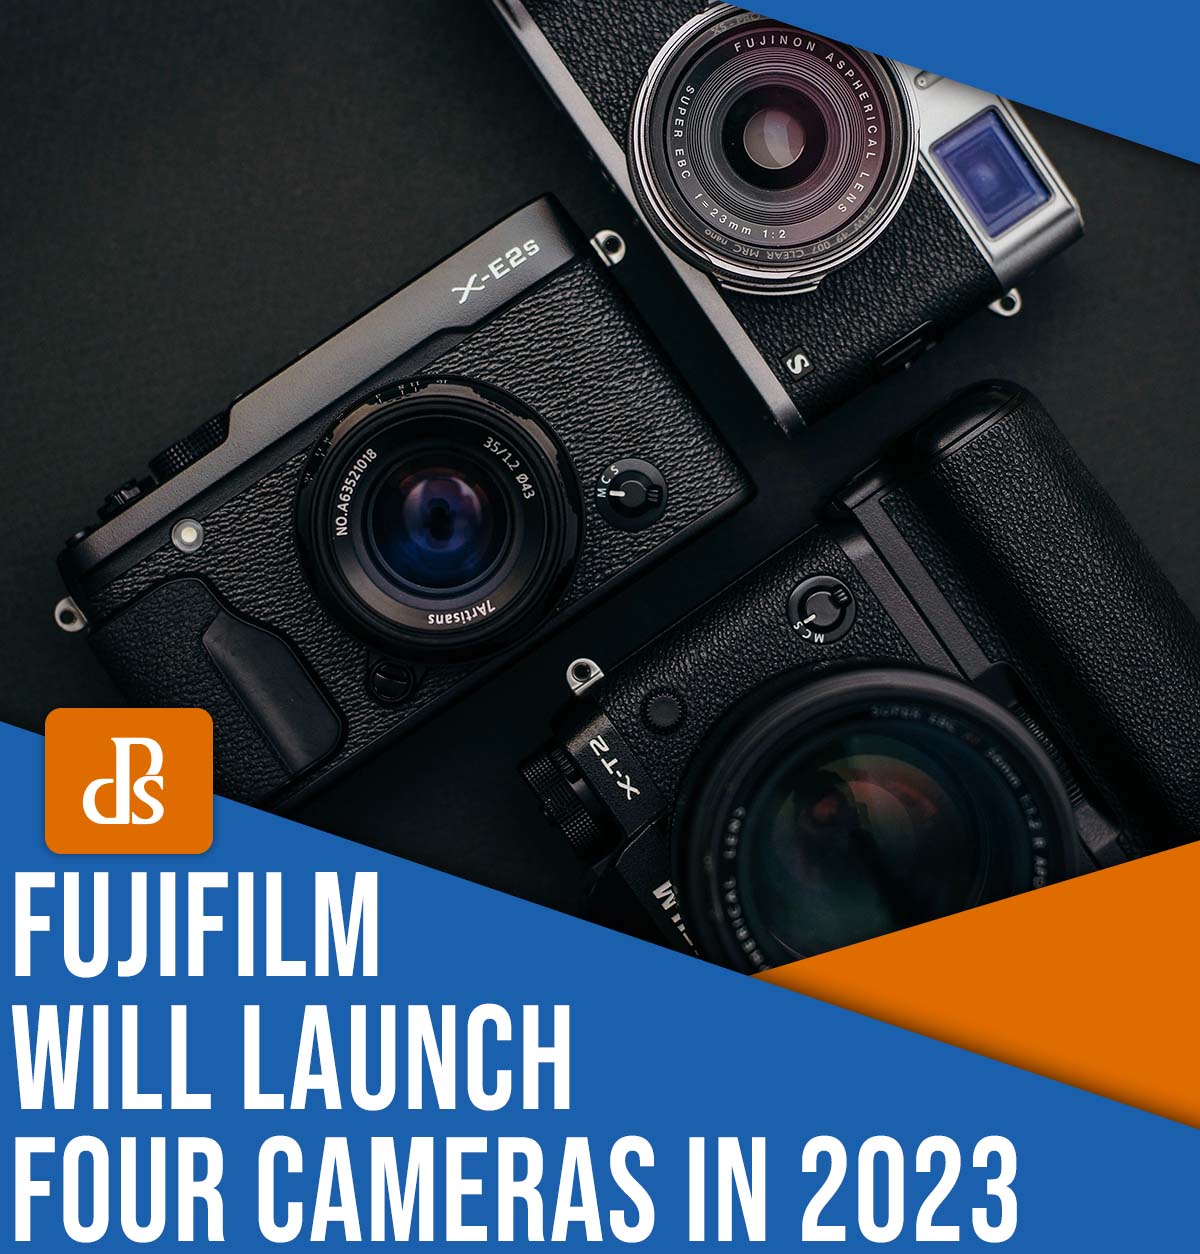 Fujifilm will launch four cameras in 2023